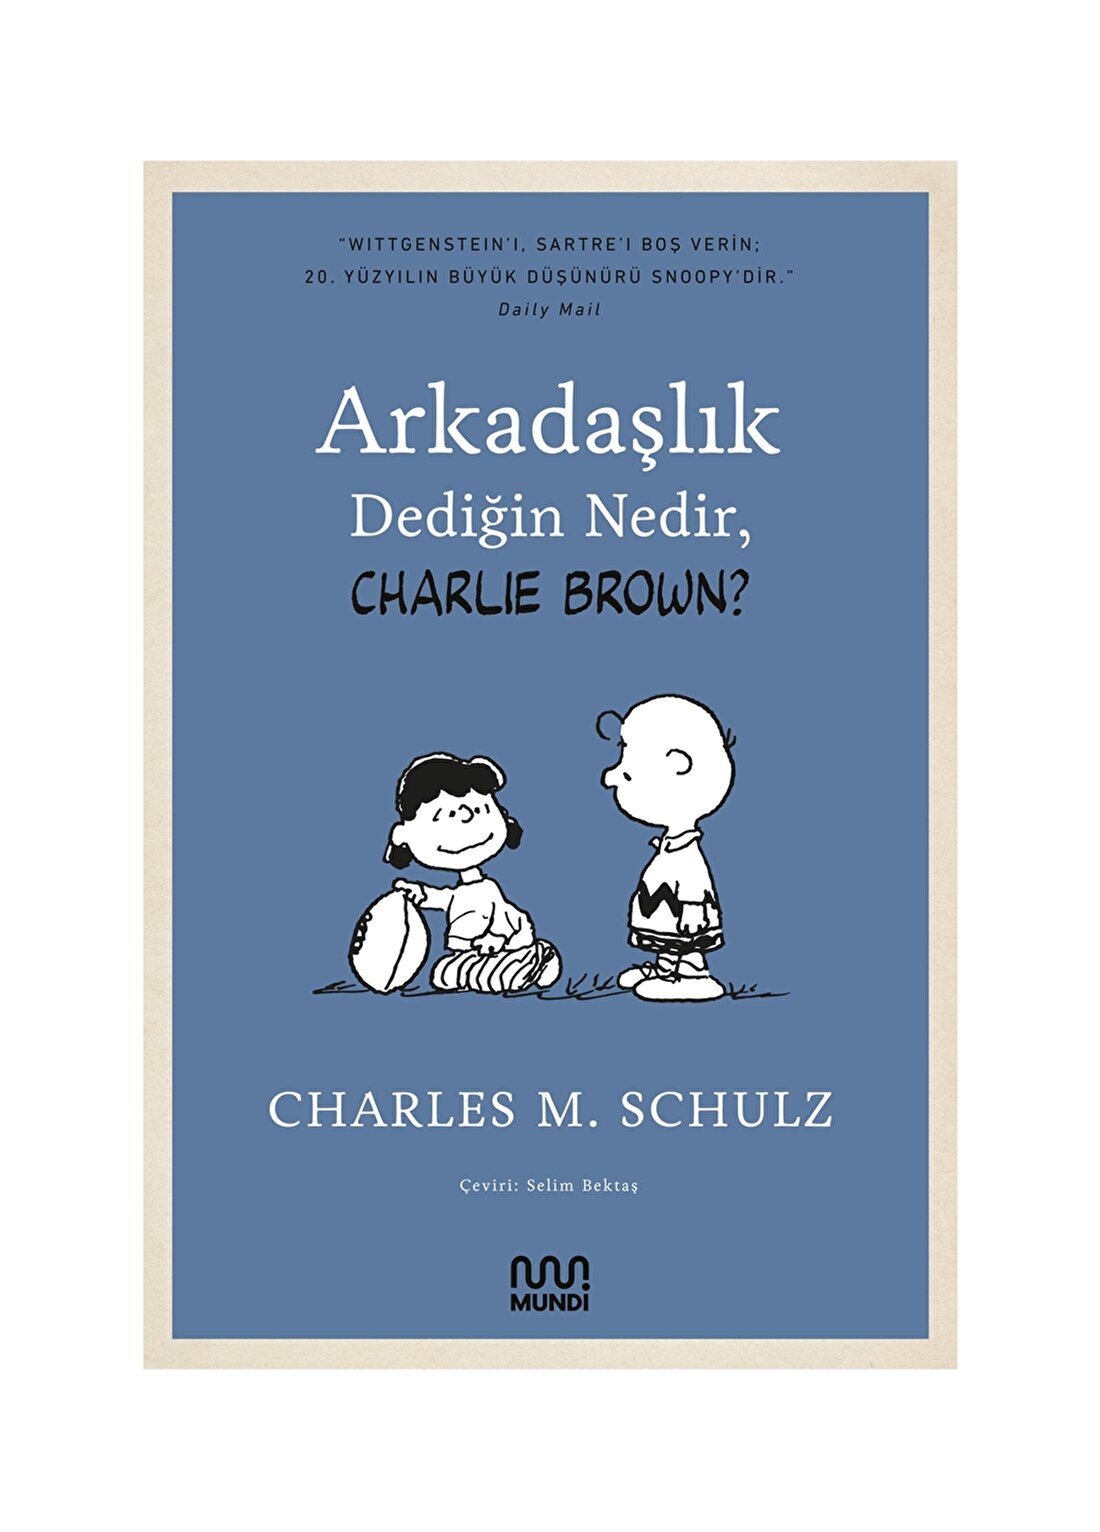 Mundi CHARLES M. SCHULZ Arkadaşlık Dediğin Nedir, Charlie Brown?